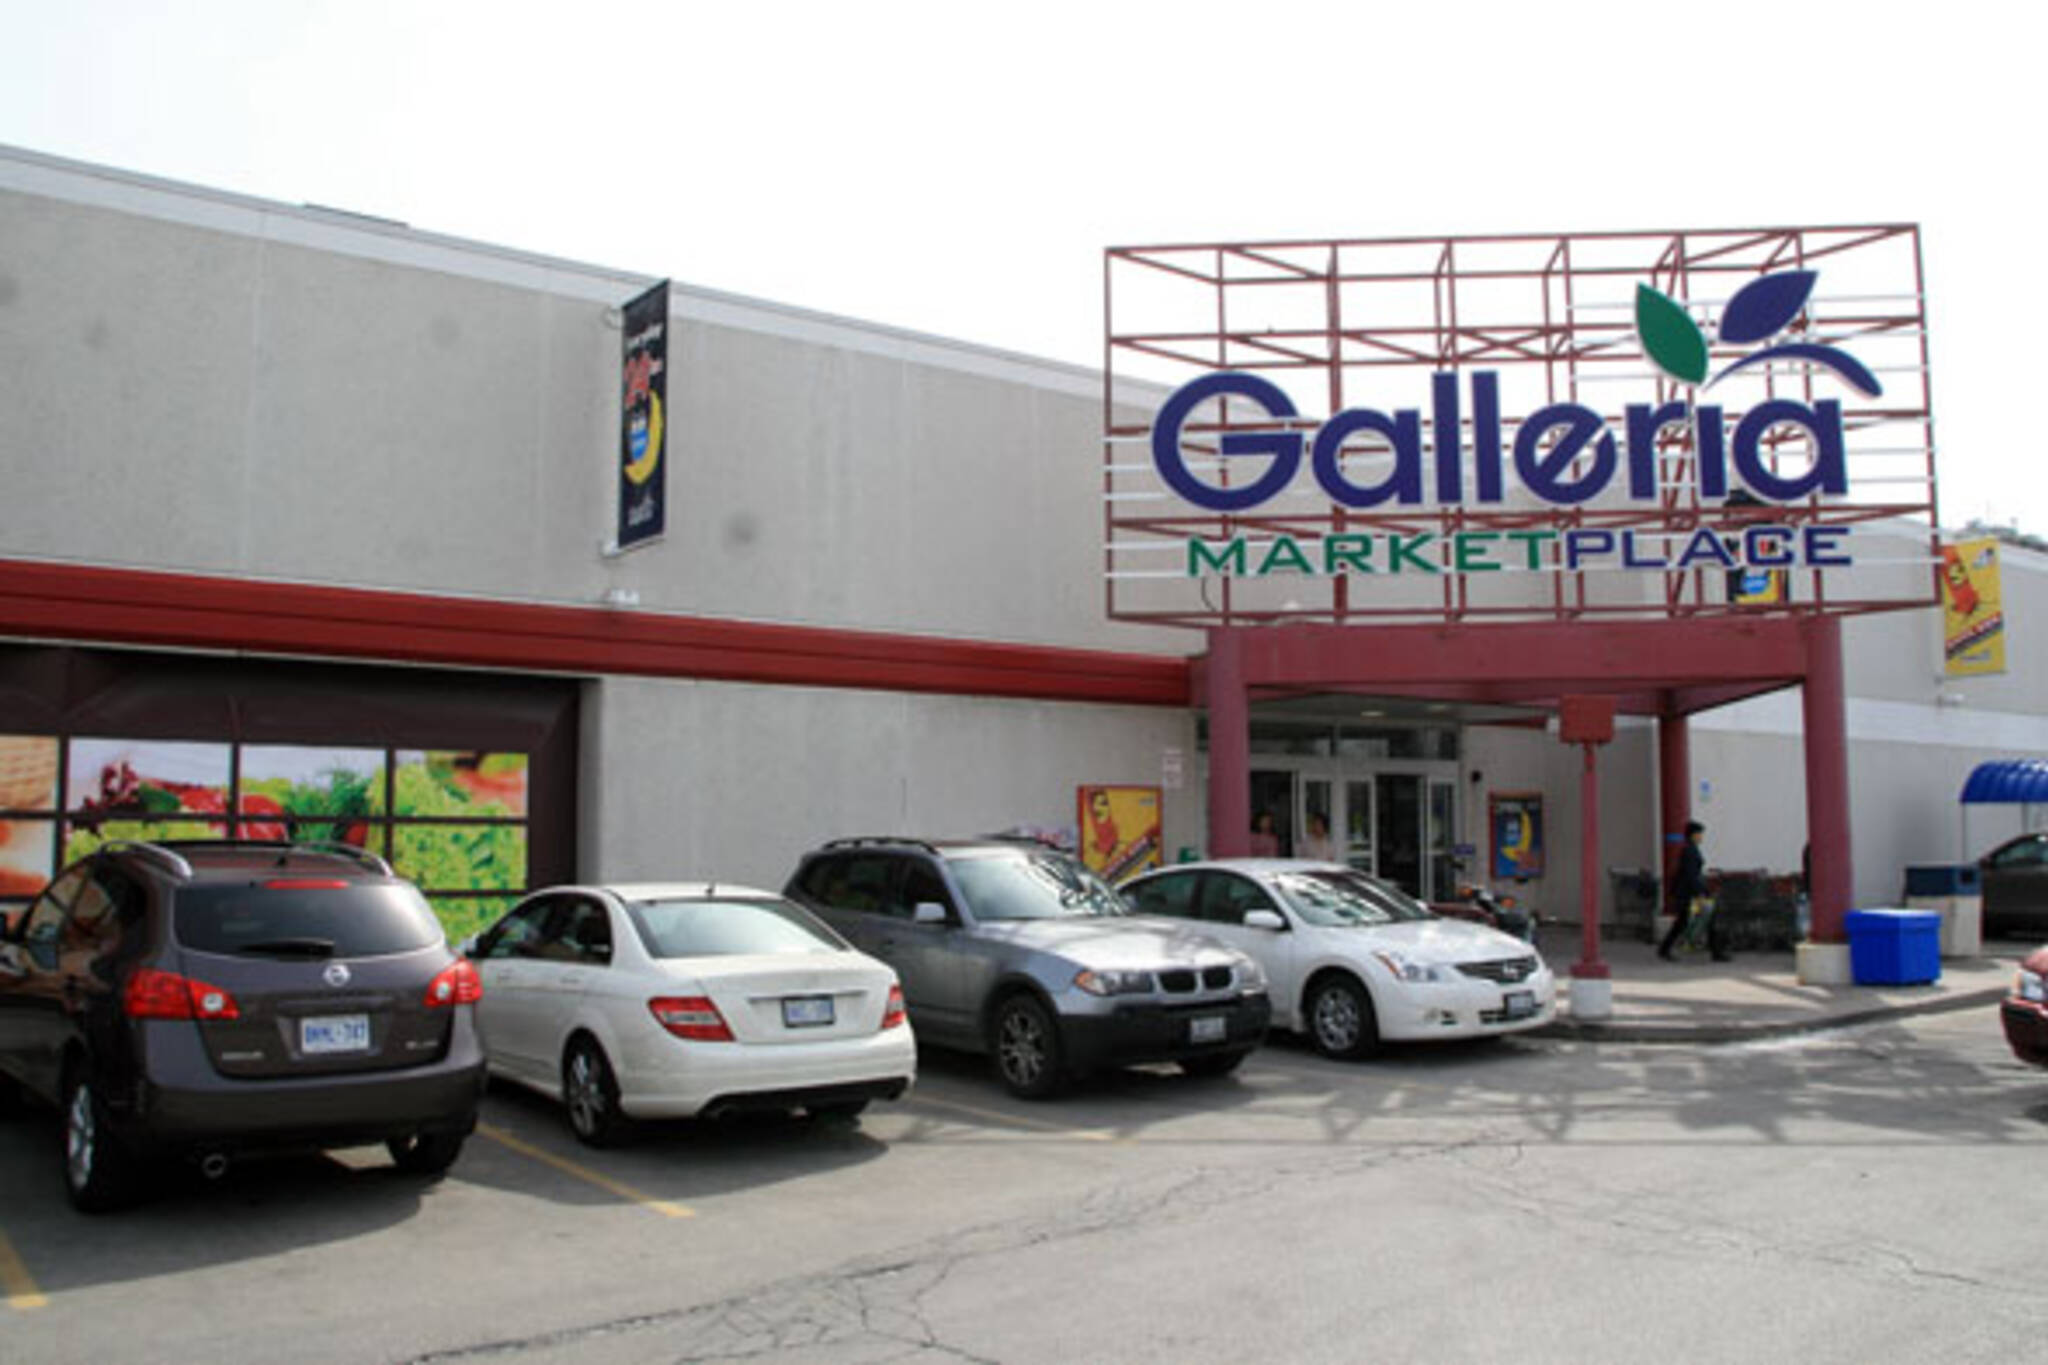 Galleria Supermarket